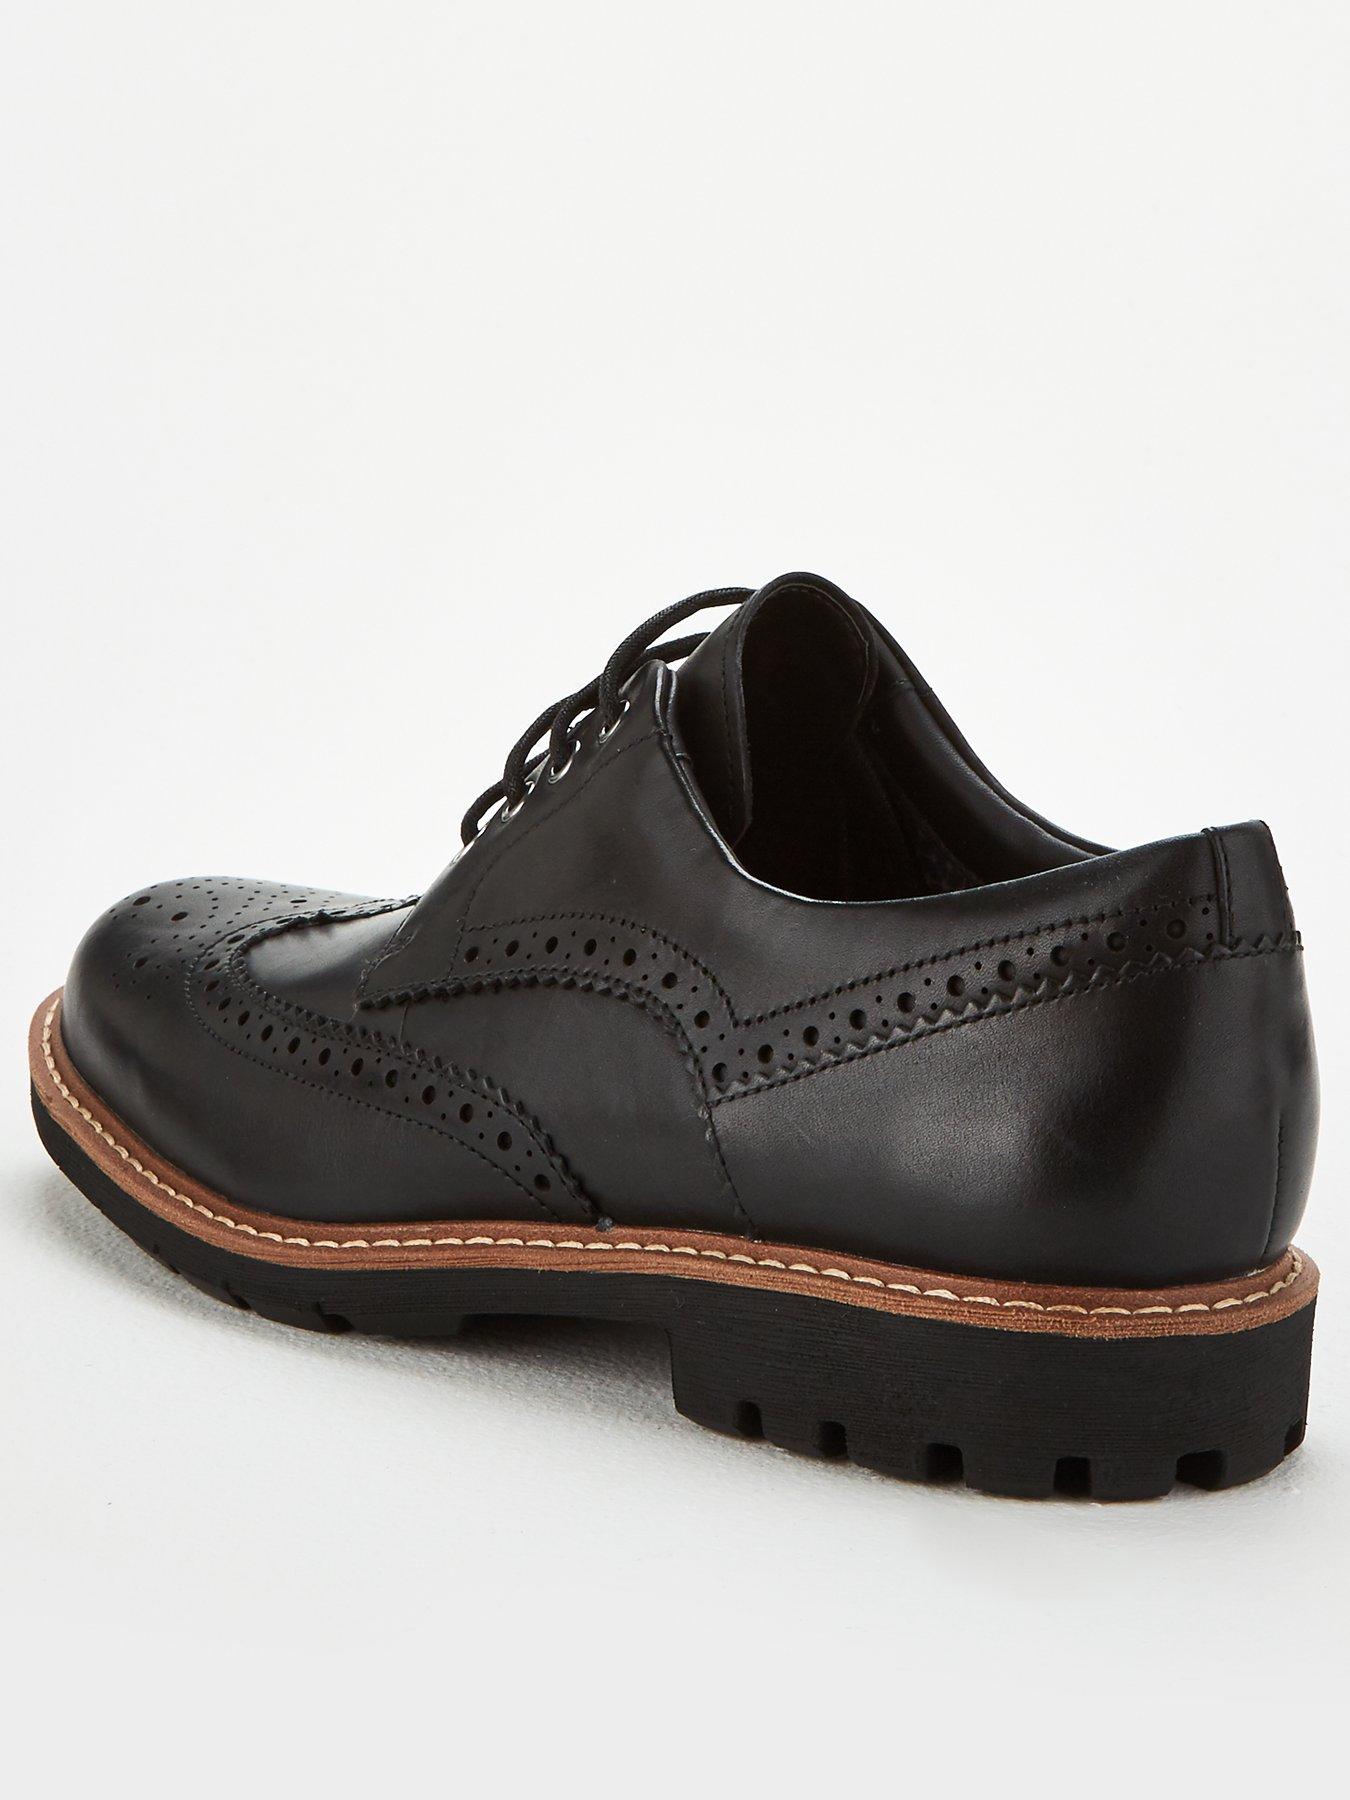 Clarks Batcombe Wing Shoe - Black | very.co.uk